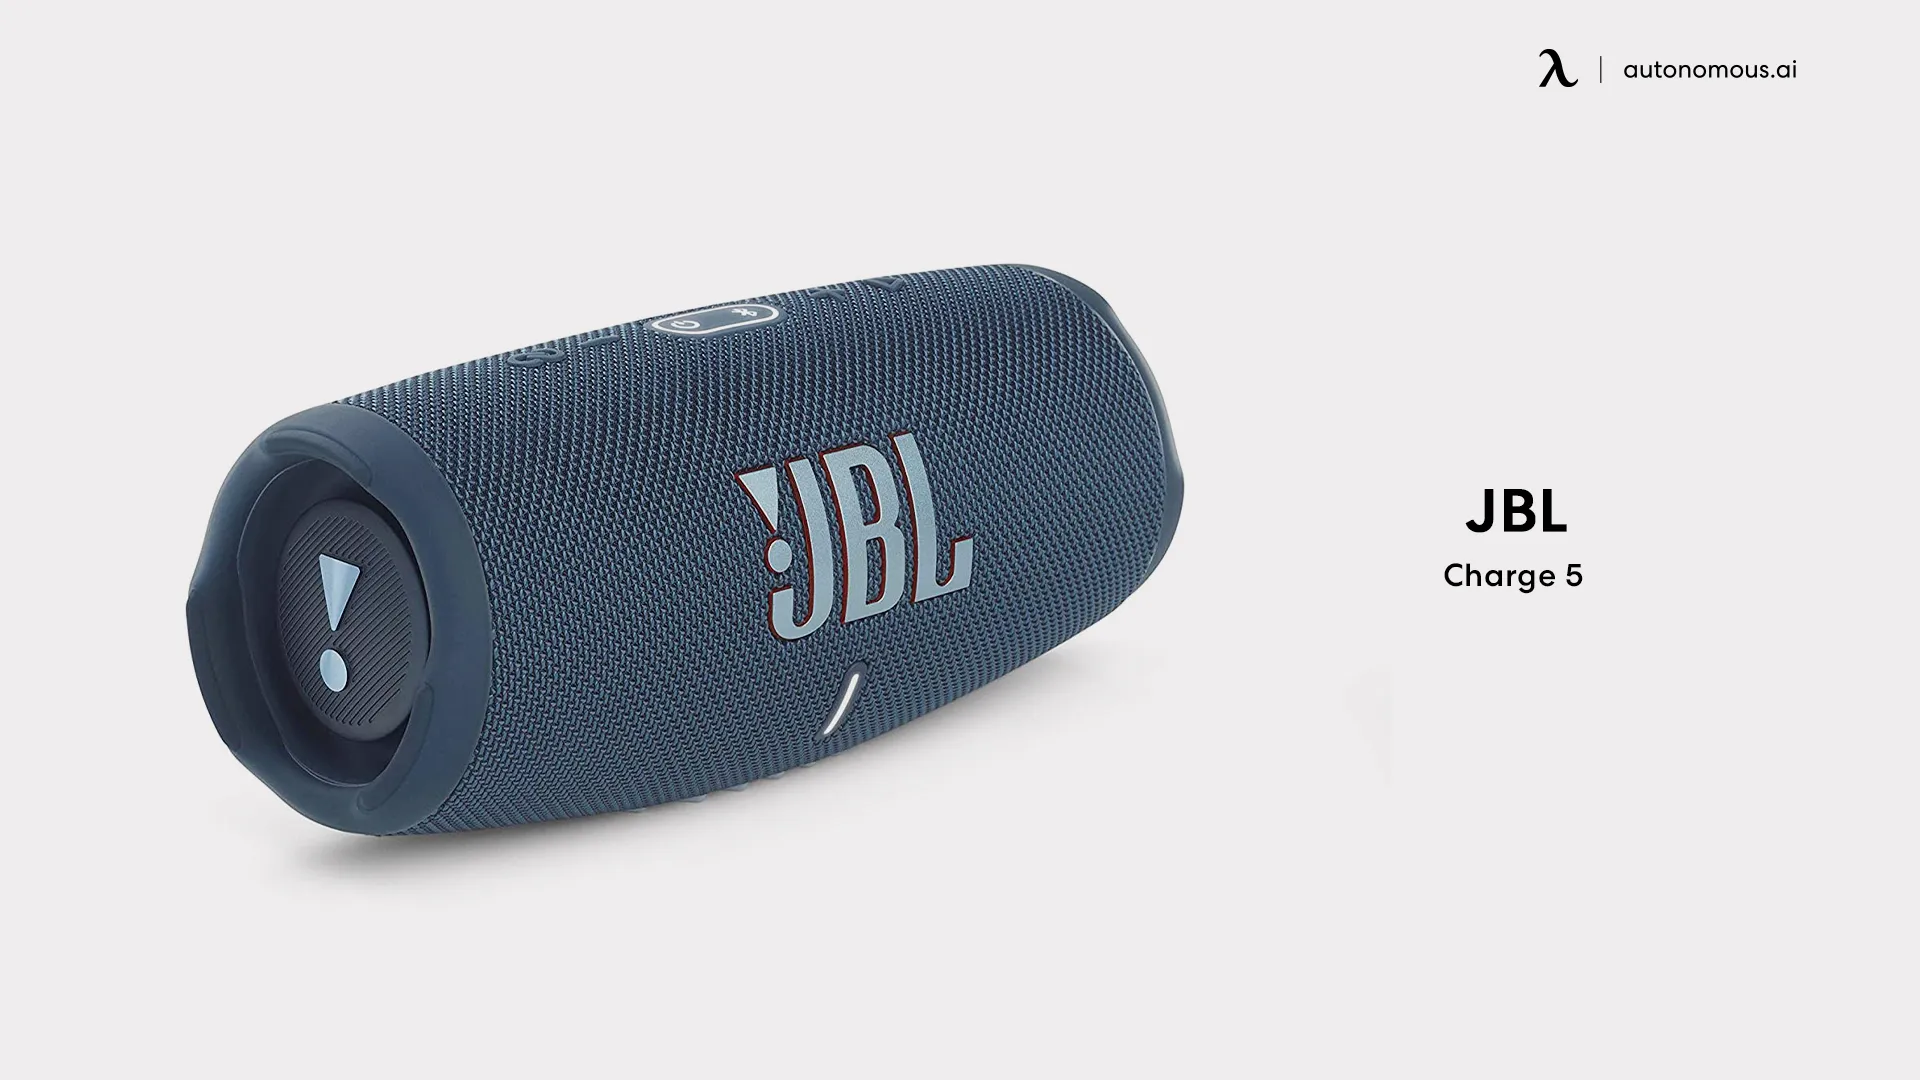 JBL Charge 5 wireless speaker